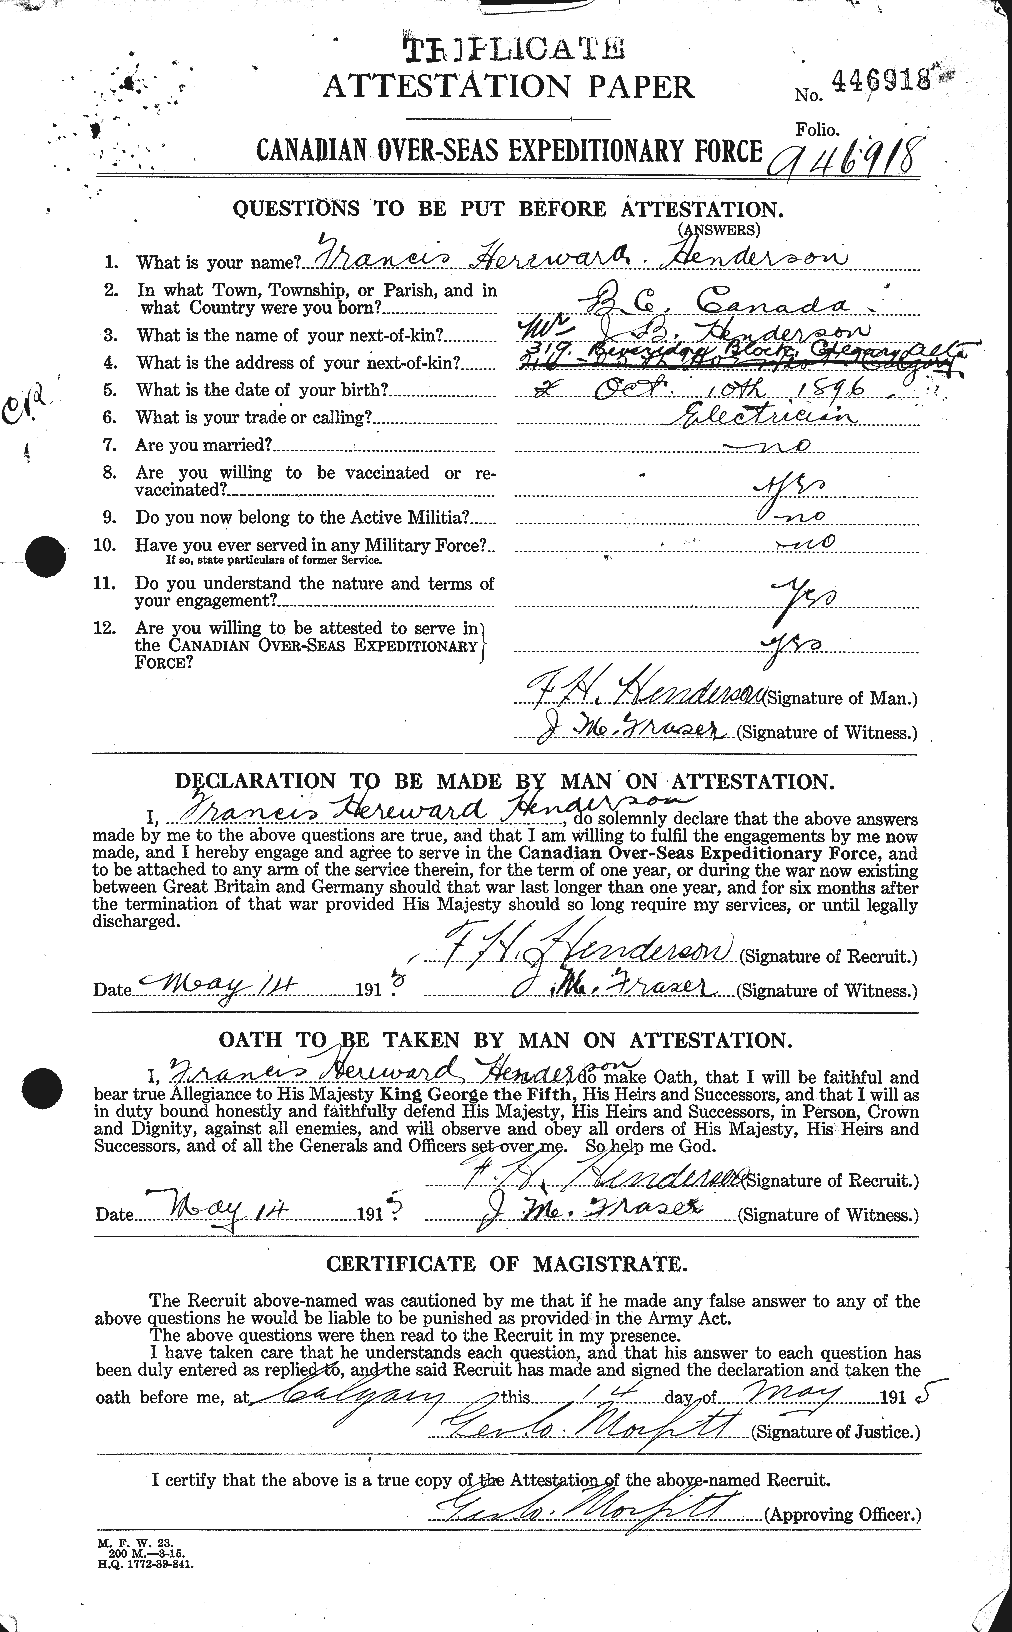 Dossiers du Personnel de la Première Guerre mondiale - CEC 390184a